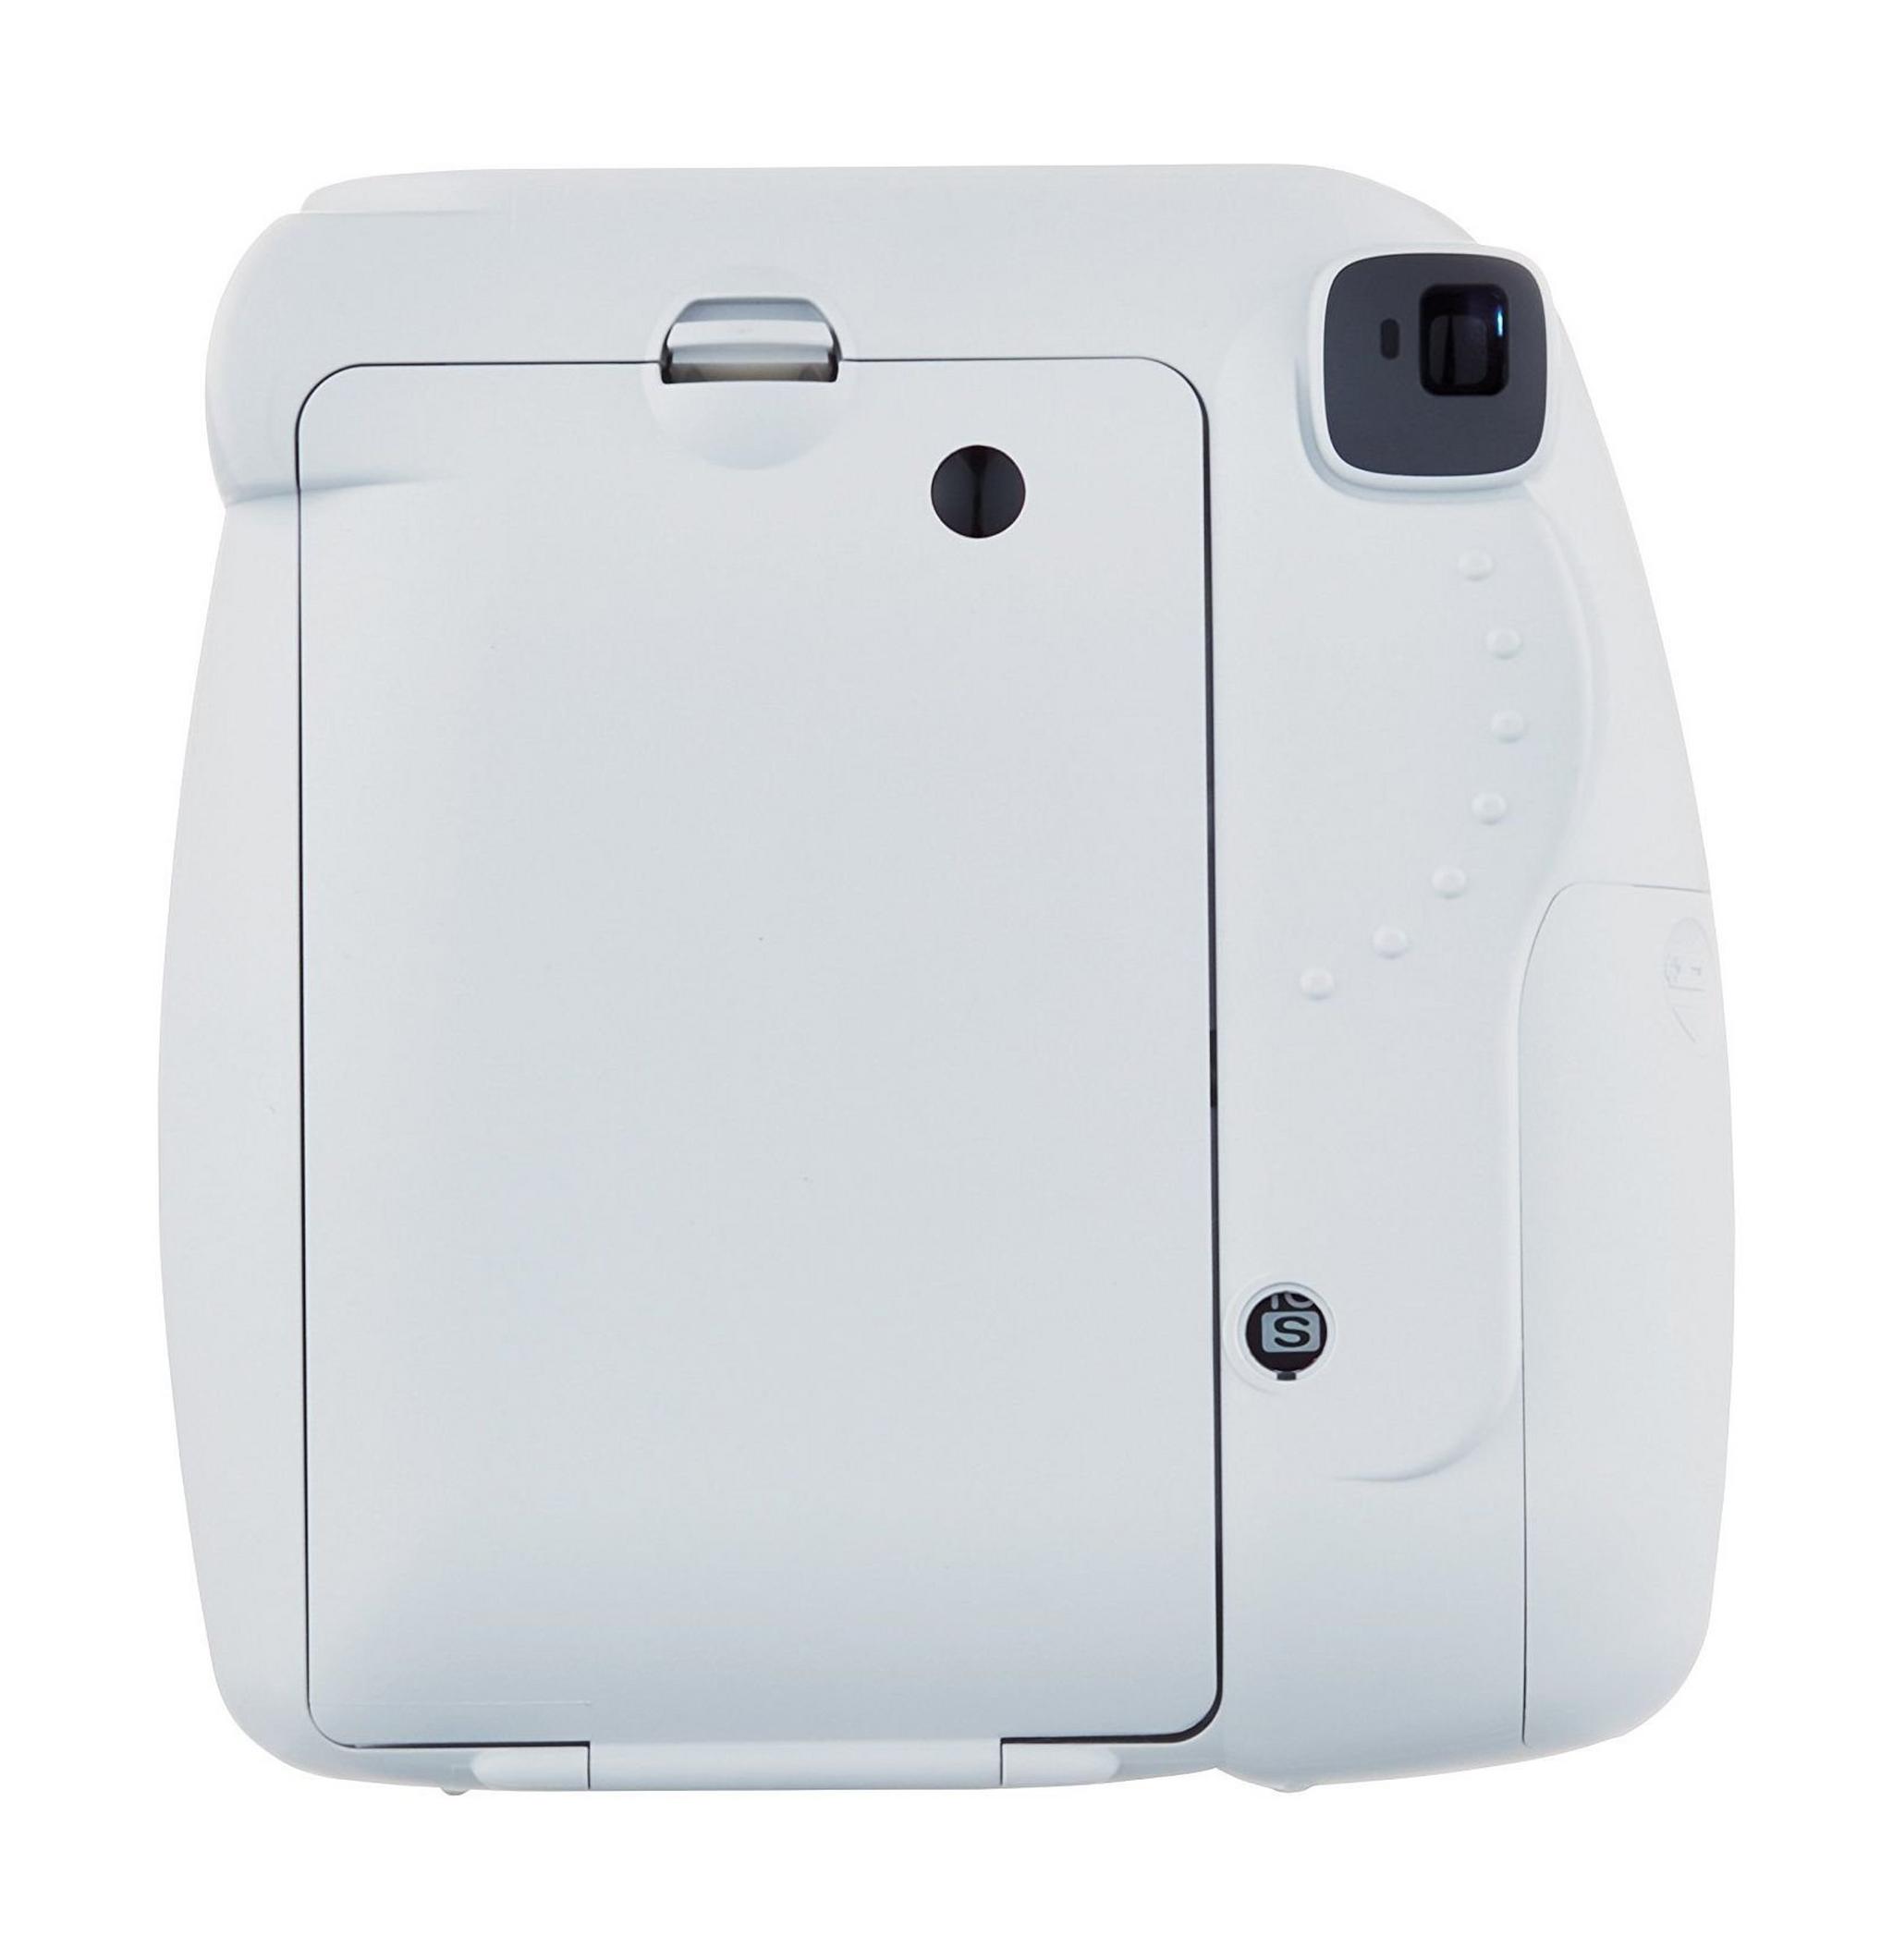 Fujifilm Instax Mini 9 Instant Film Camera - Smokey White